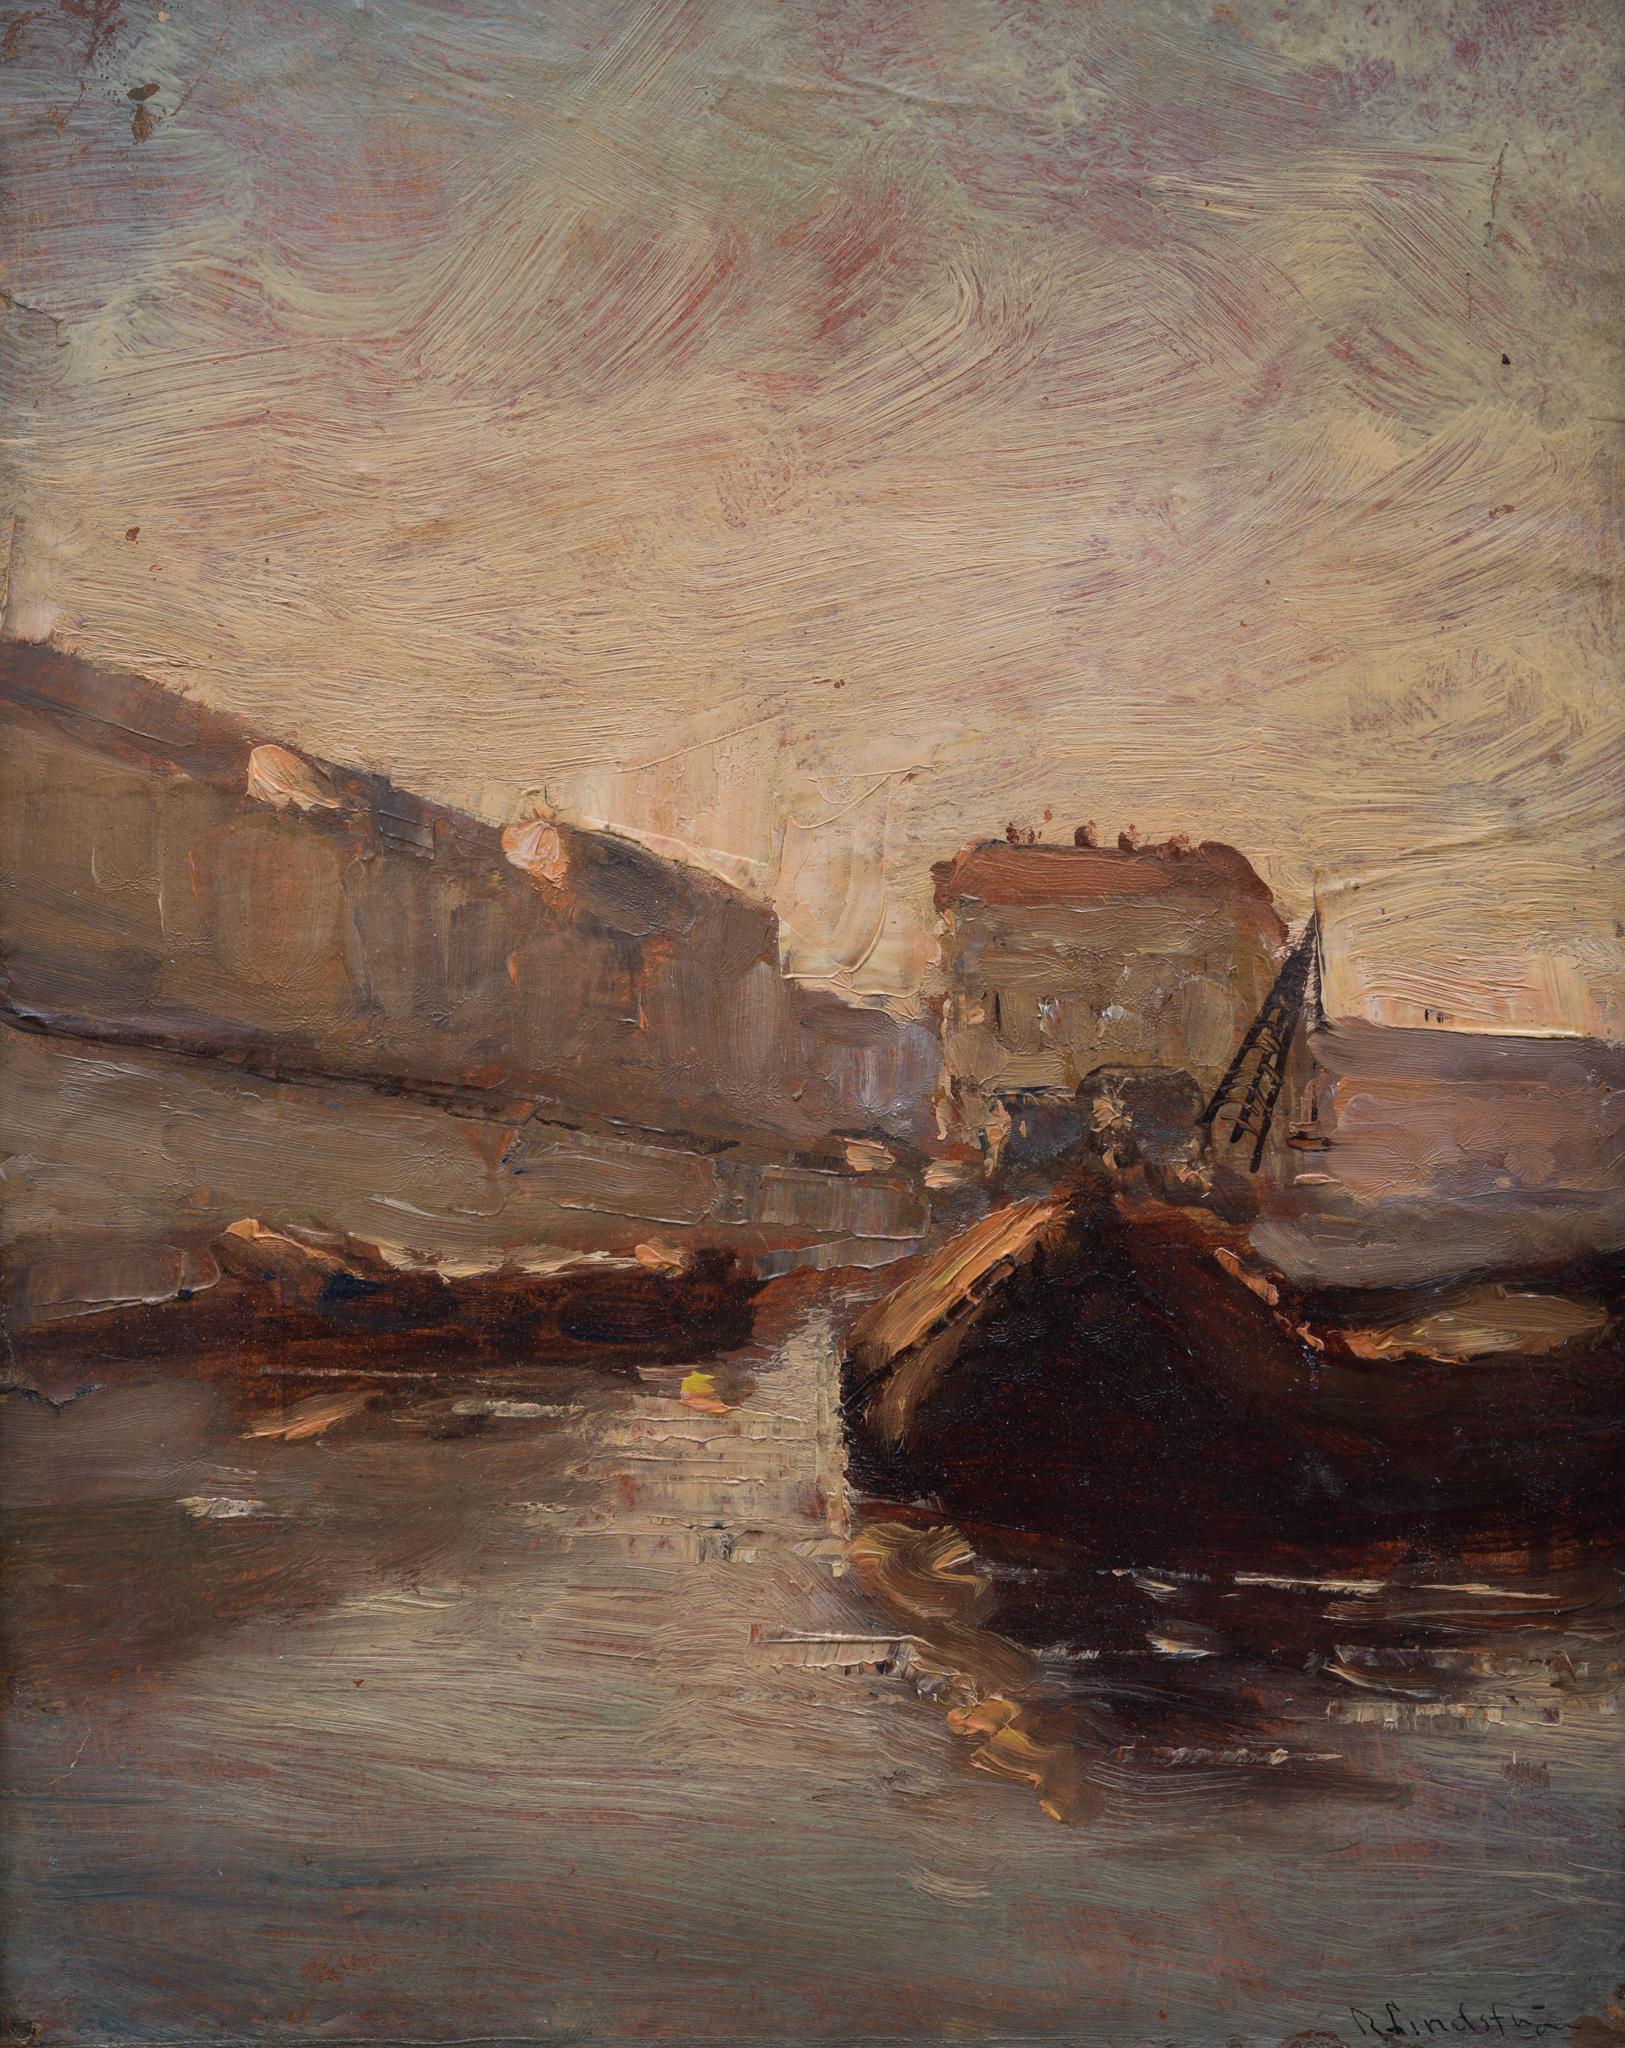 Canal-Szene, möglicherweise Paris. Gemalt Anfang 1900